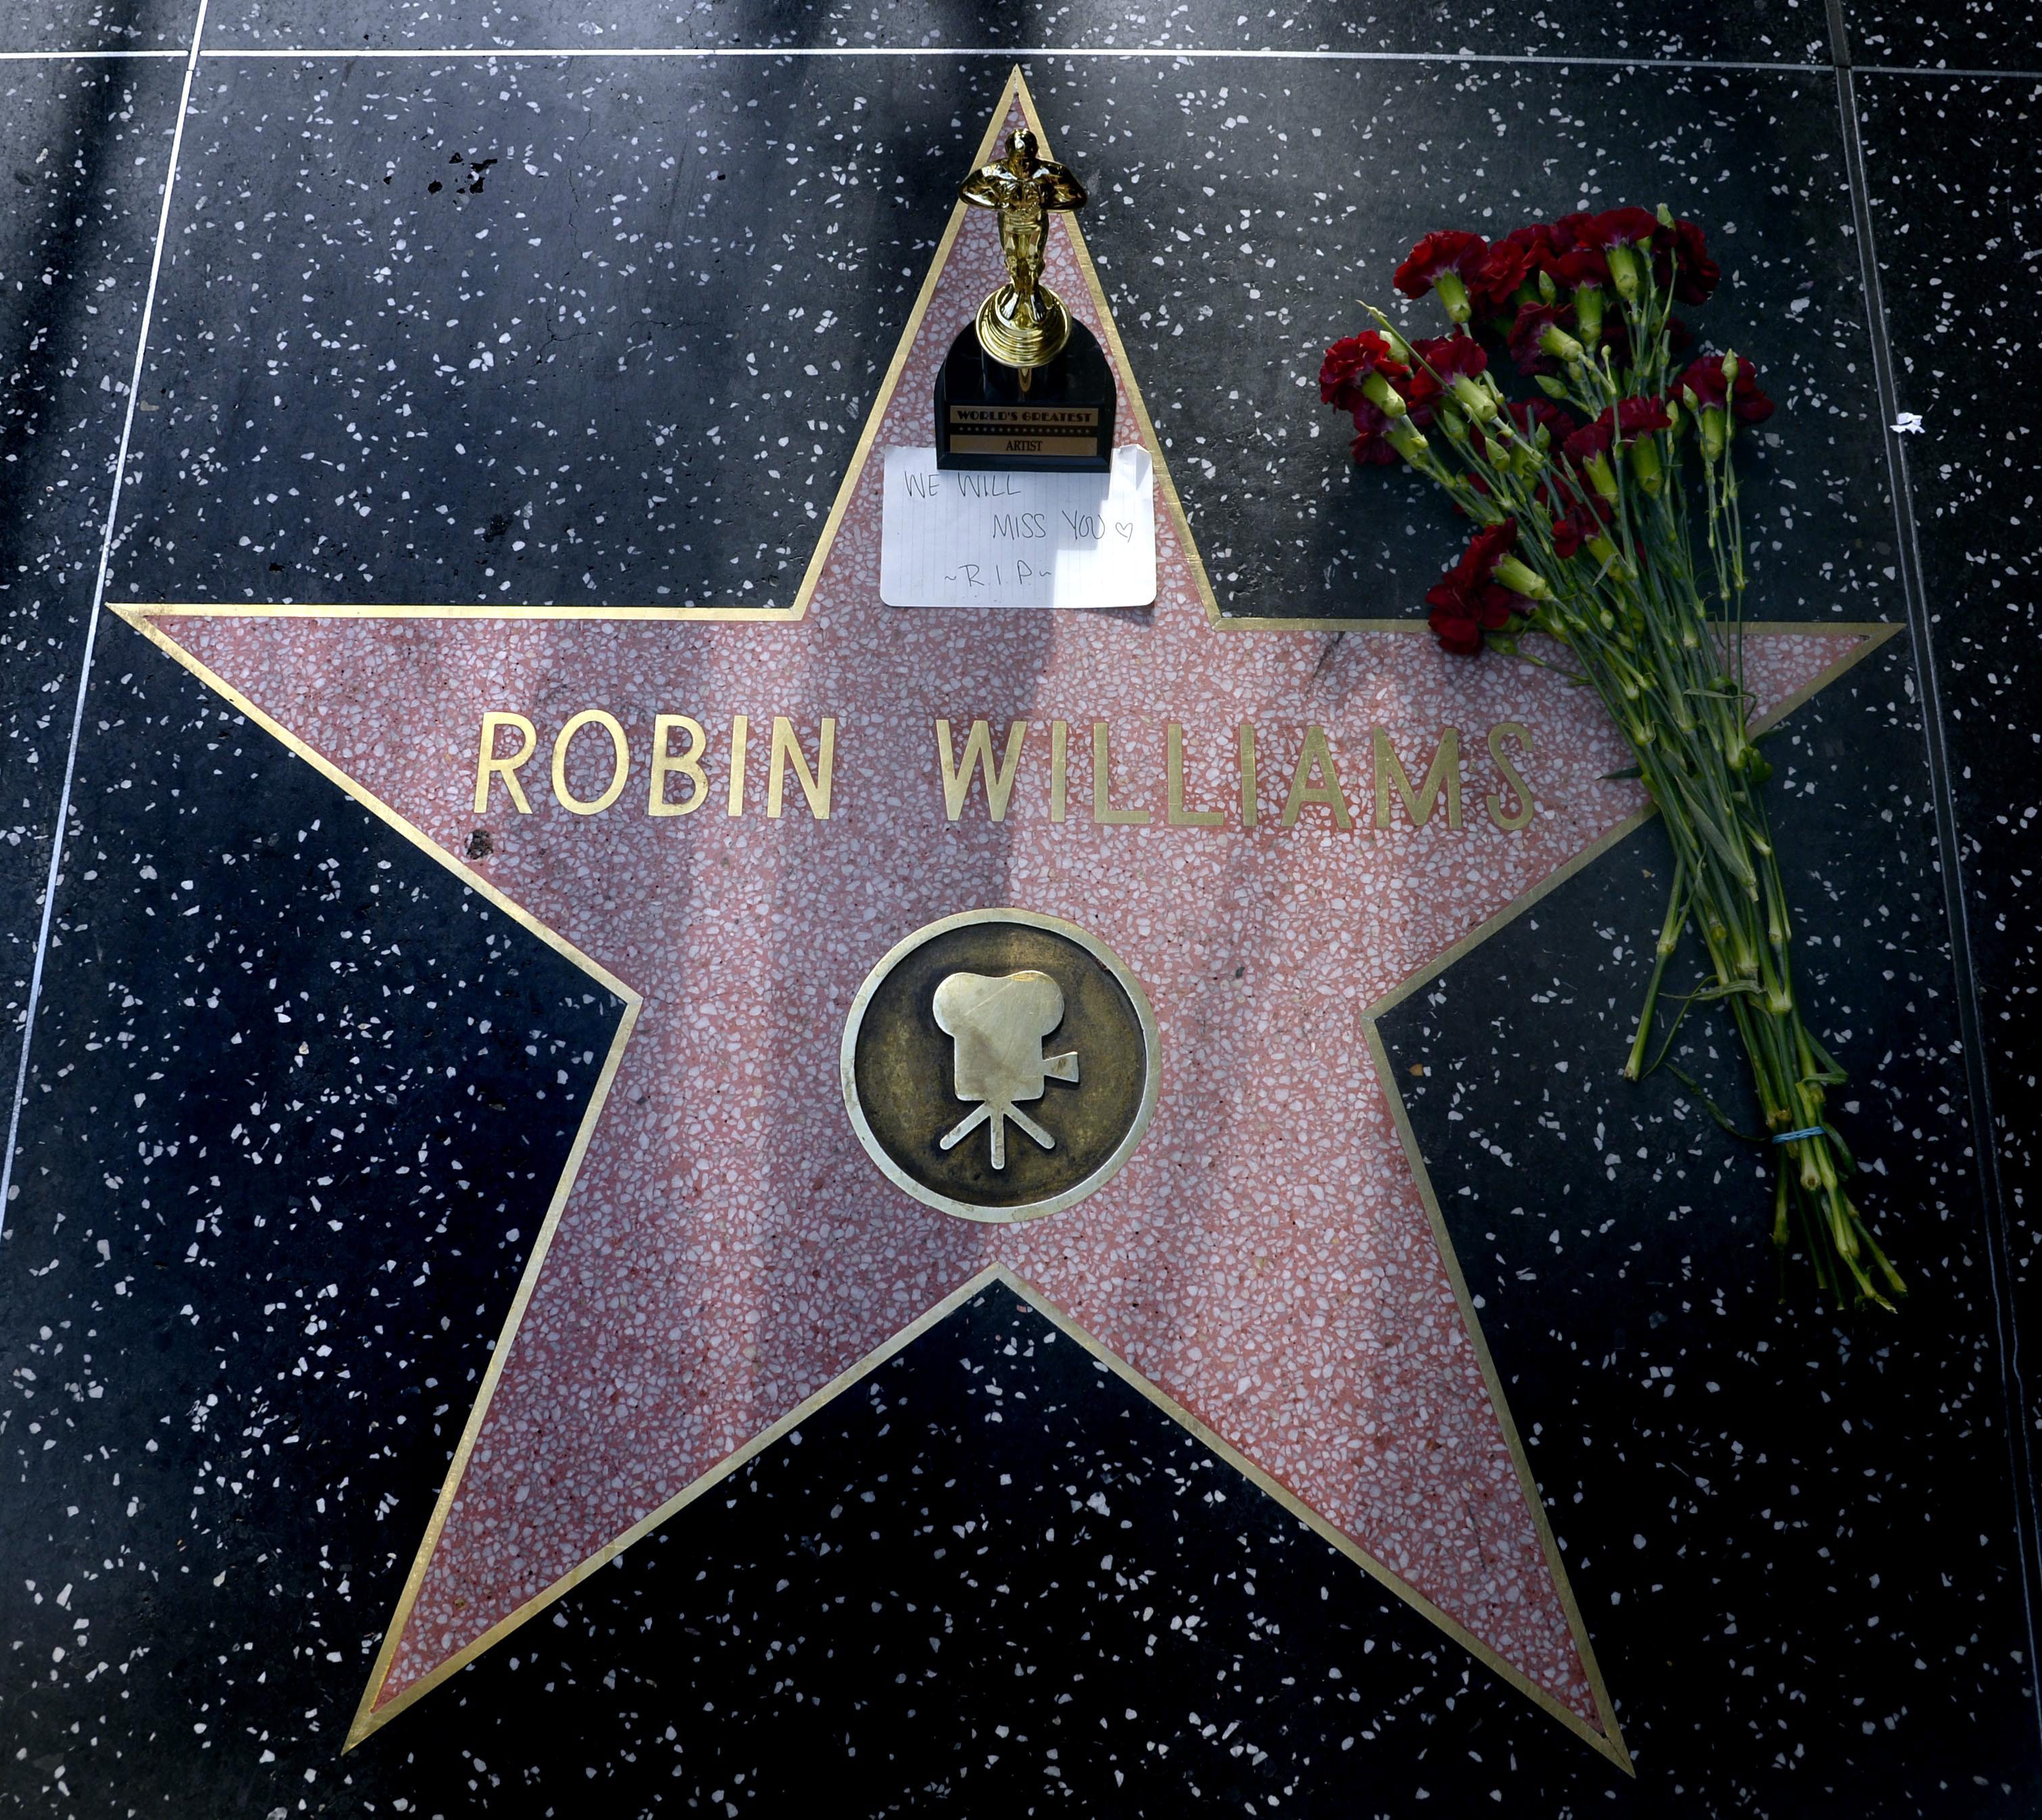 Οι στάχτες του Ρόμπιν Γουίλιαμς σκορπίστηκαν στον Κόλπο του Σαν Φρανσίσκο